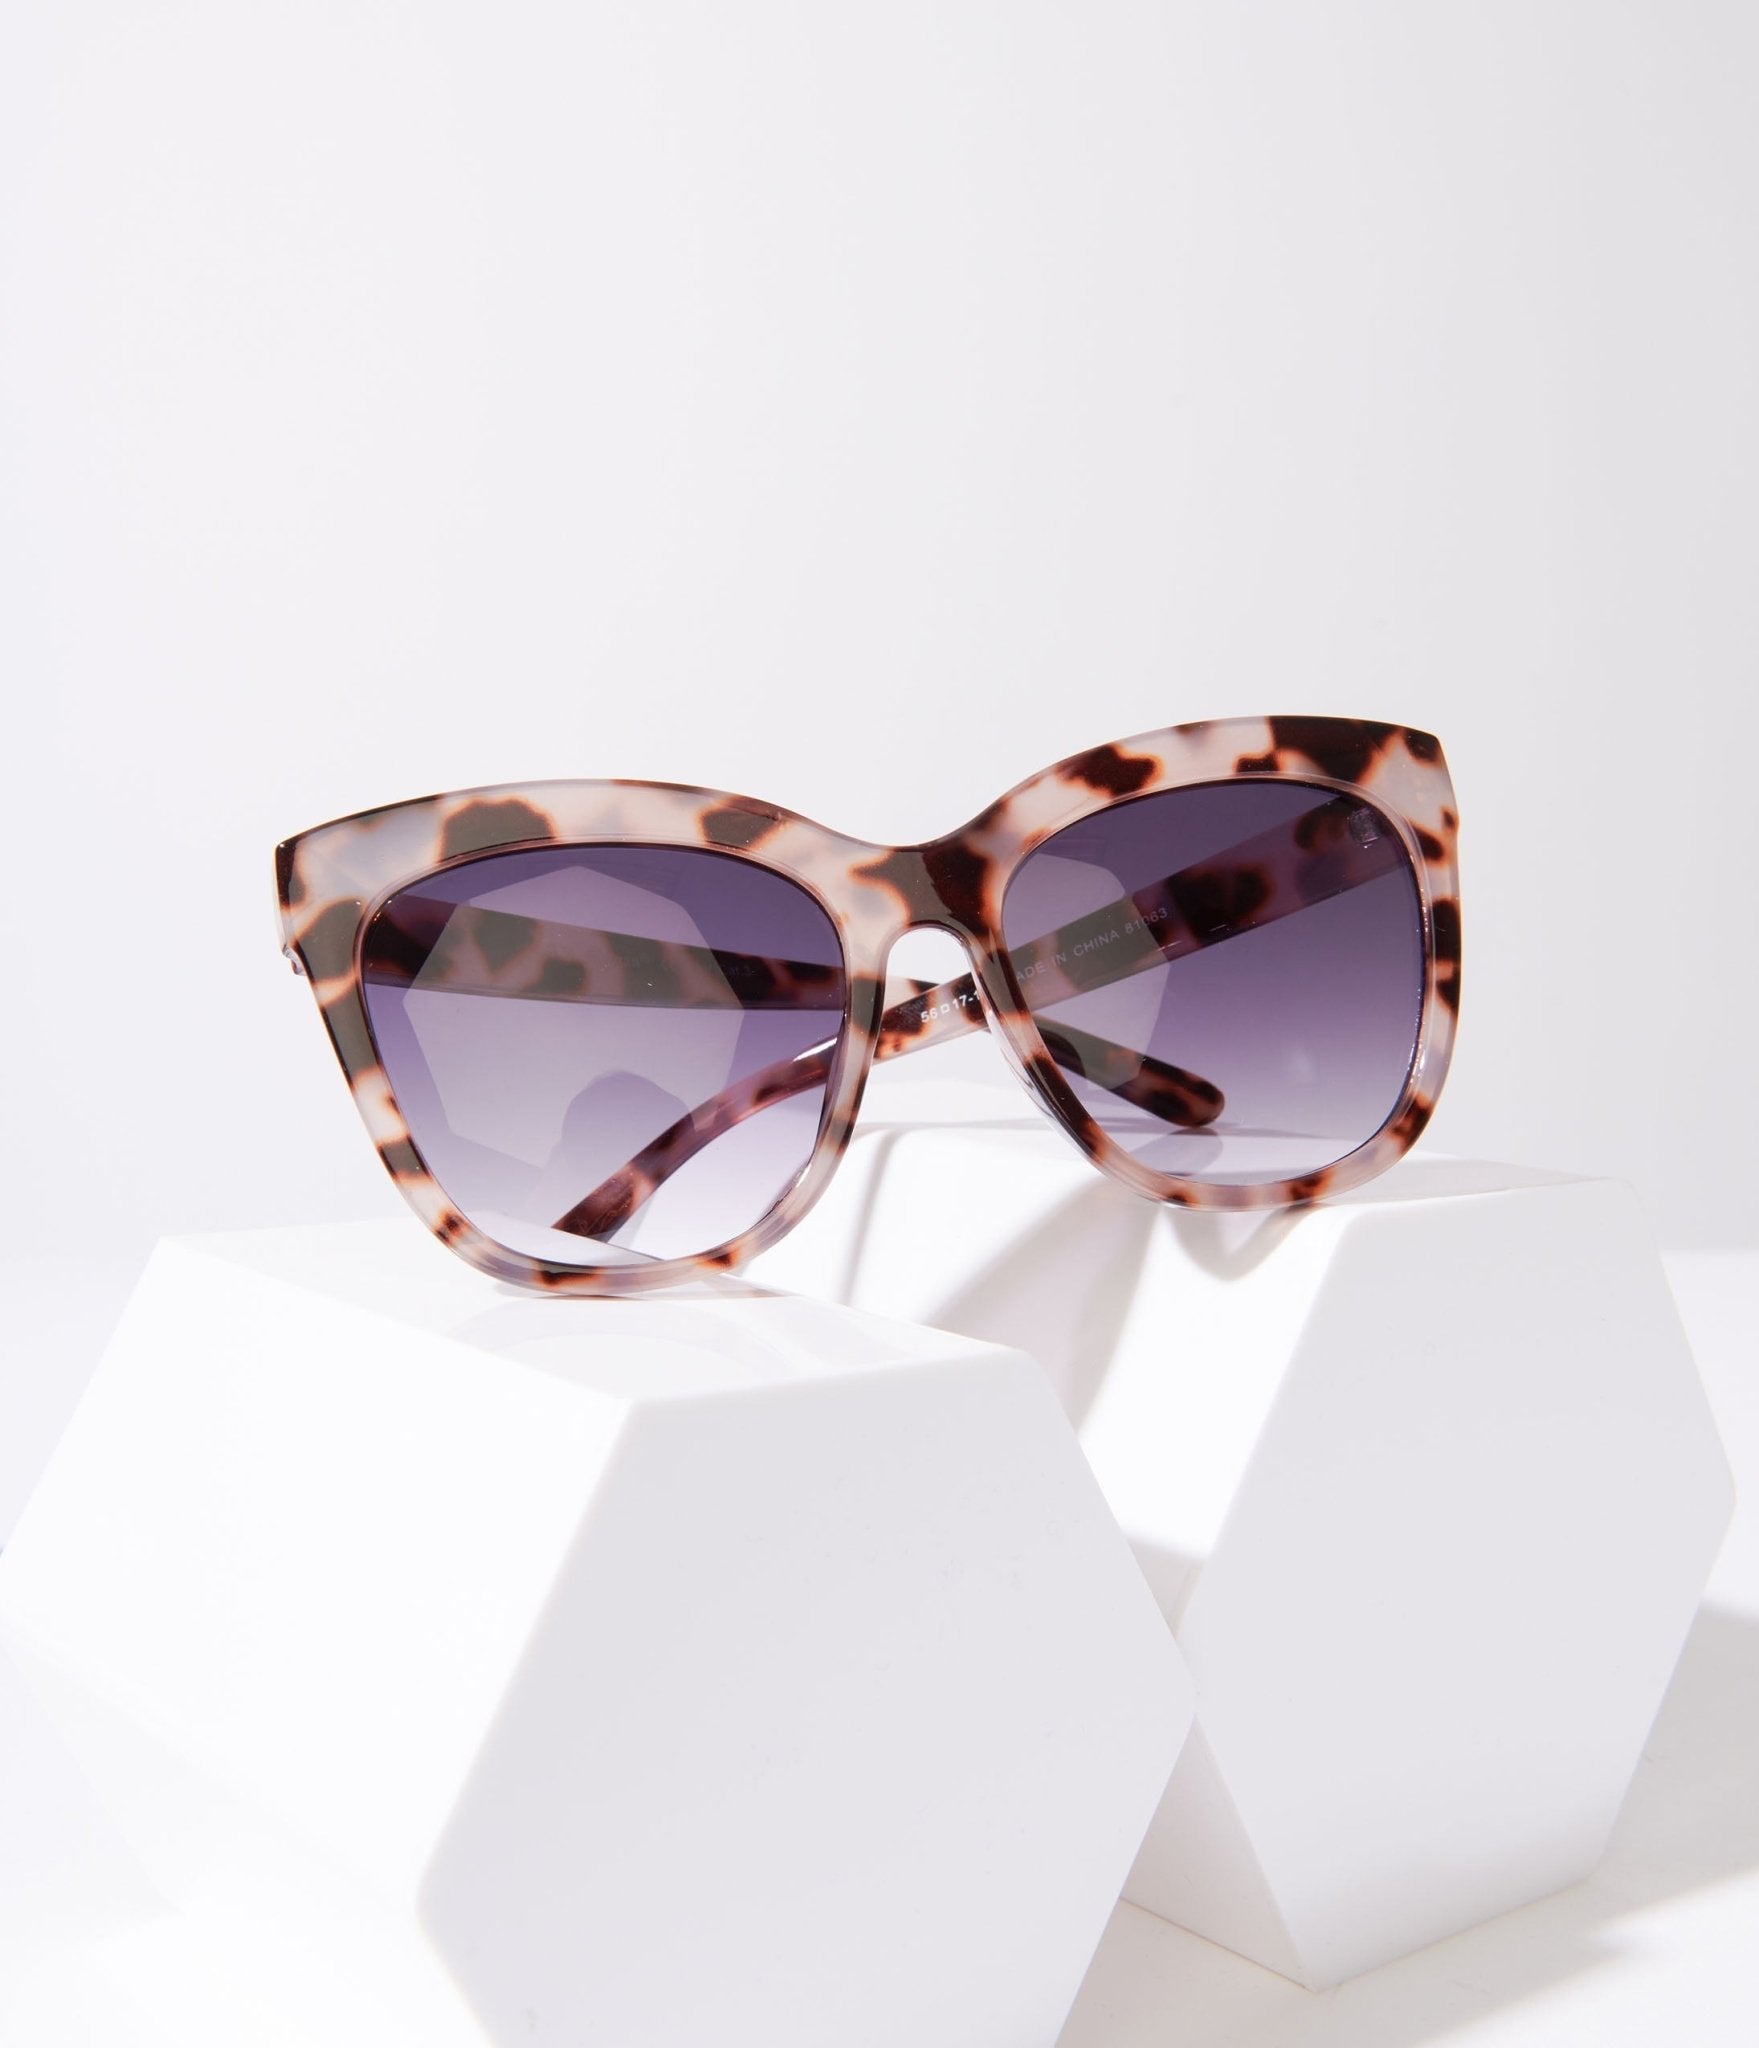 Leopard & Black Tint Wayfarer Sunglasses - Unique Vintage - Womens, ACCESSORIES, SUNGLASSES